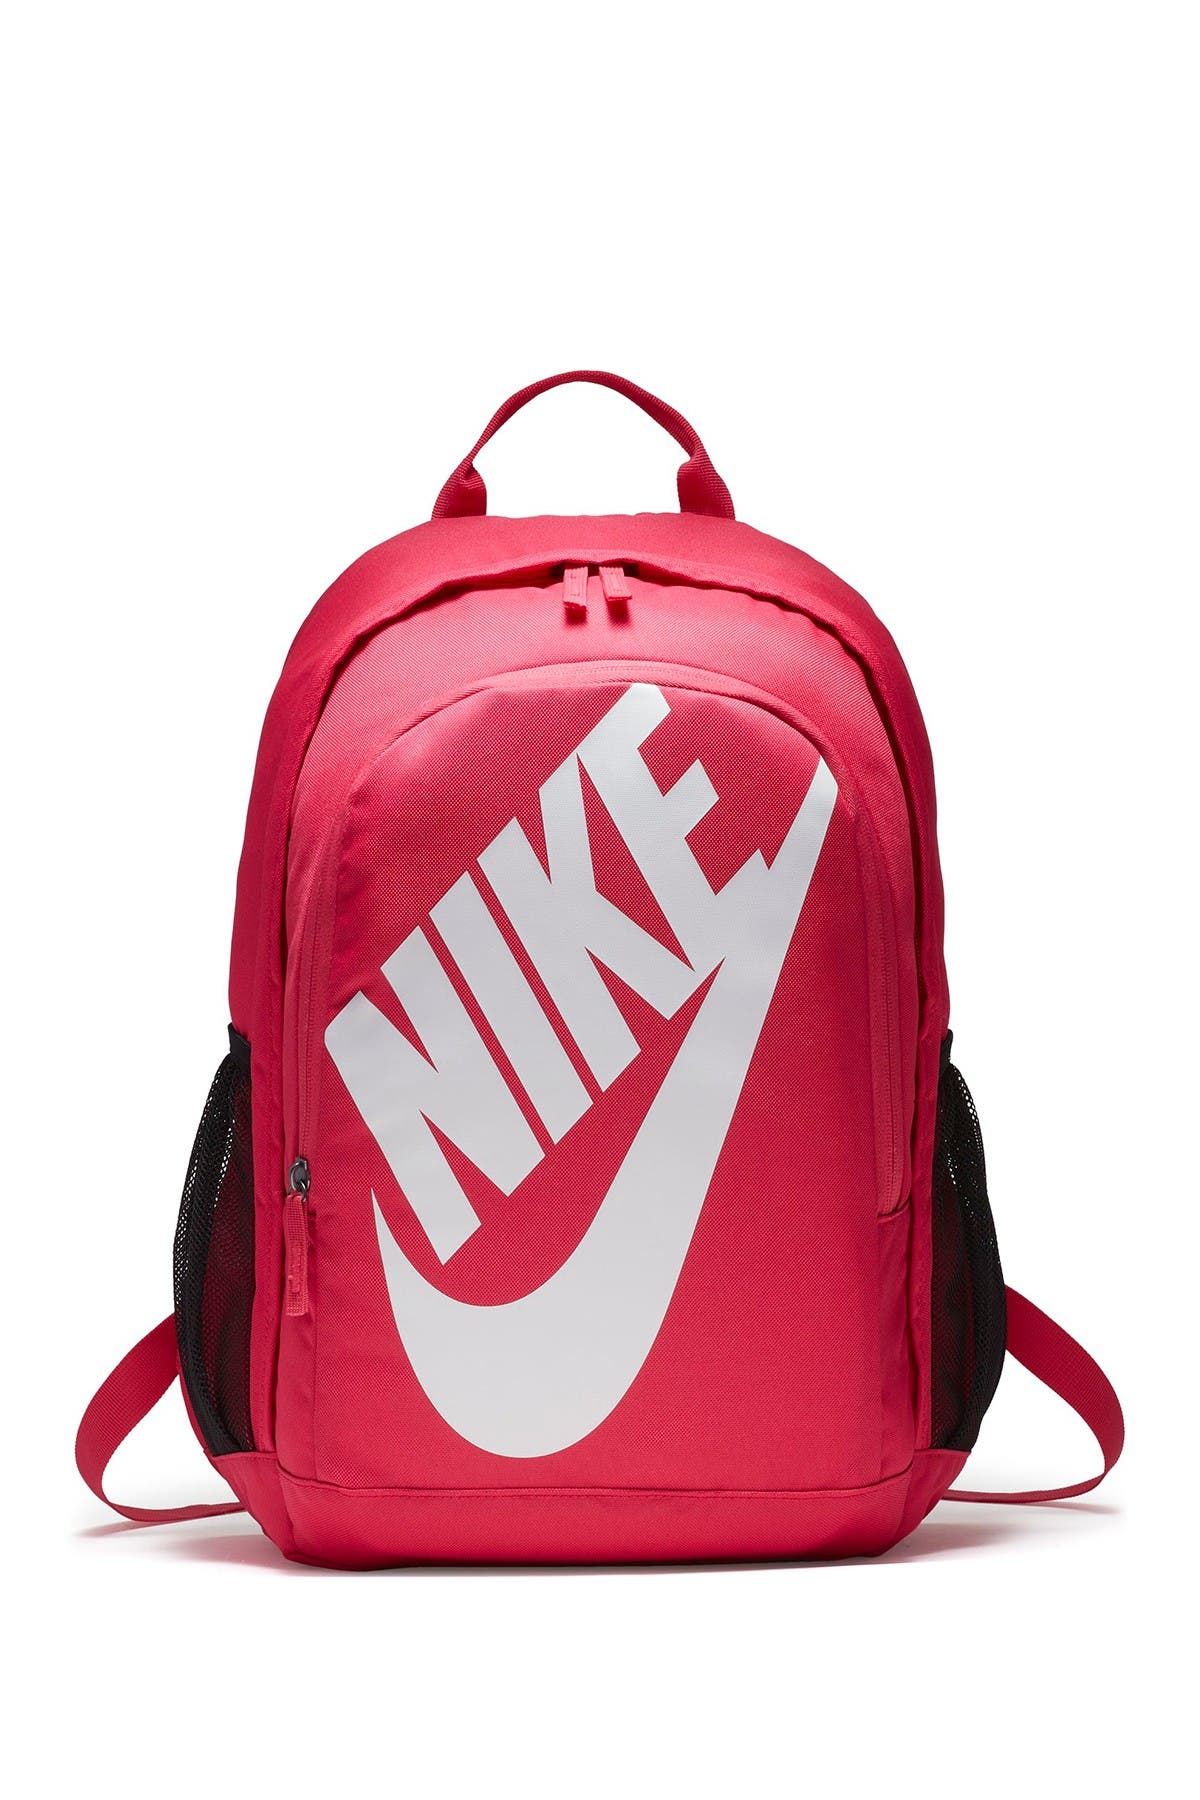 Nike | Hayward Futura Backpack 